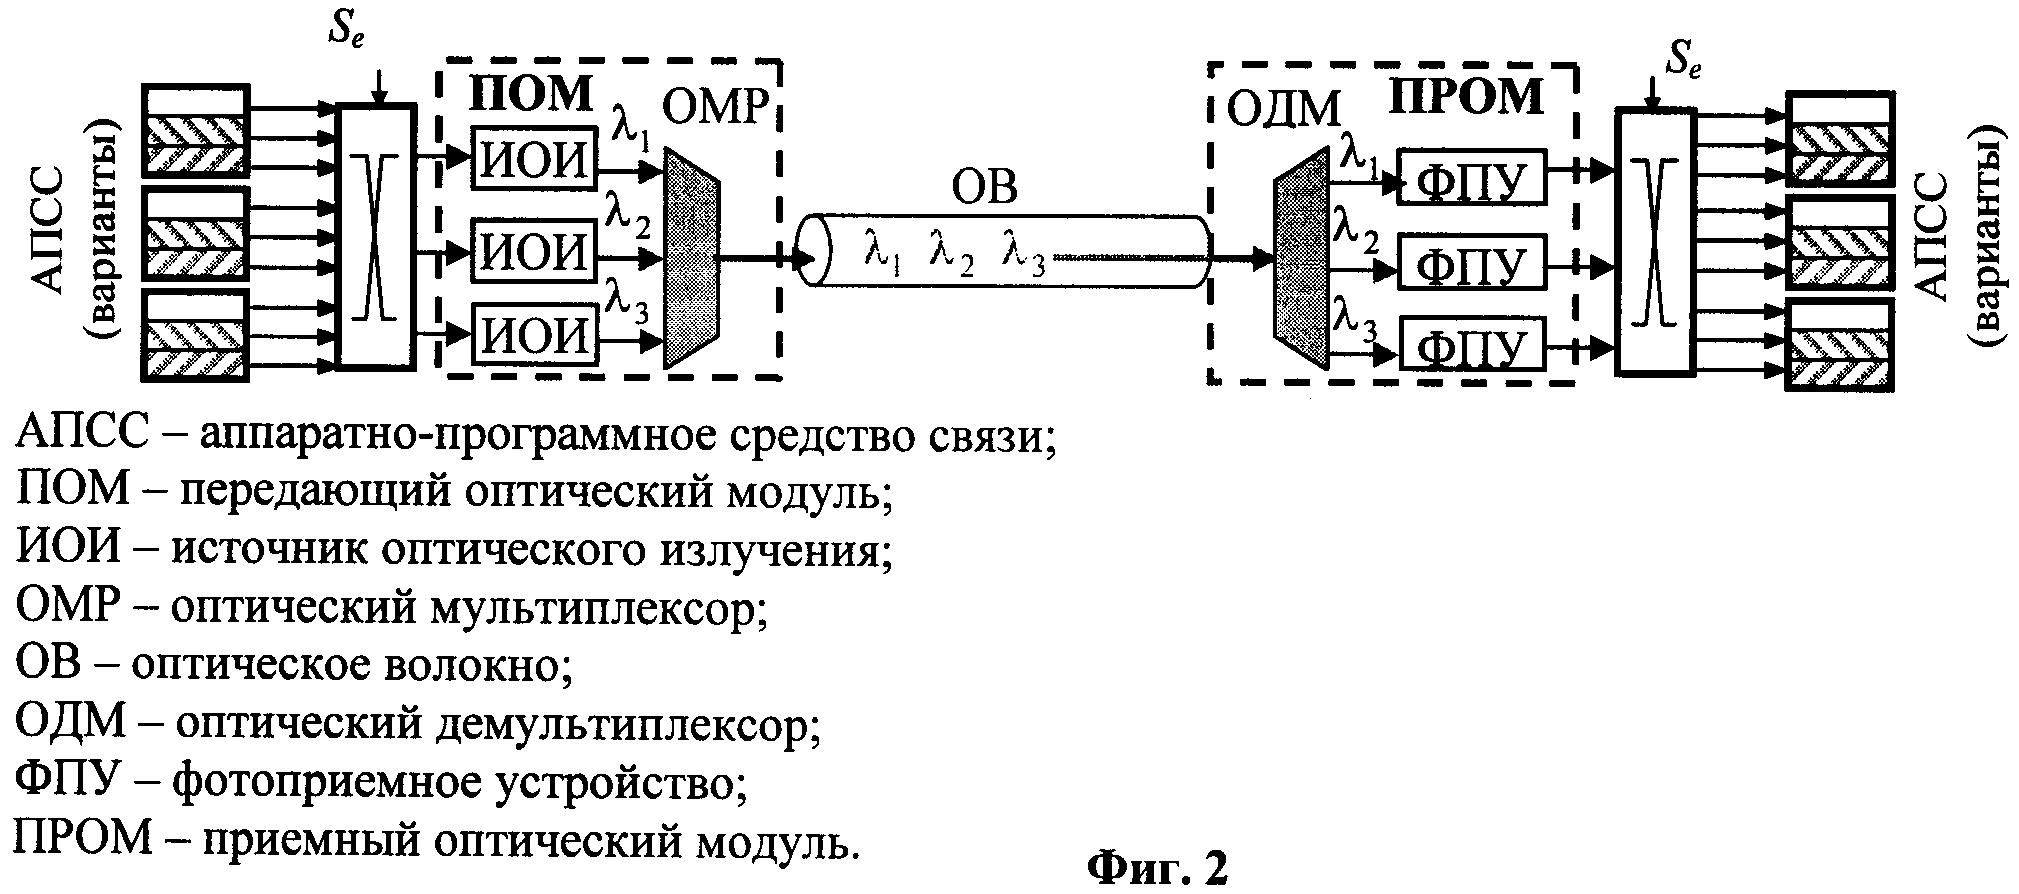 Синхронная связь. Оптический мультиплексор демультиплексор. Мультиплексор оптический схема. Мультиплексор и демультиплексор схема. Схема мультиплексора е1.